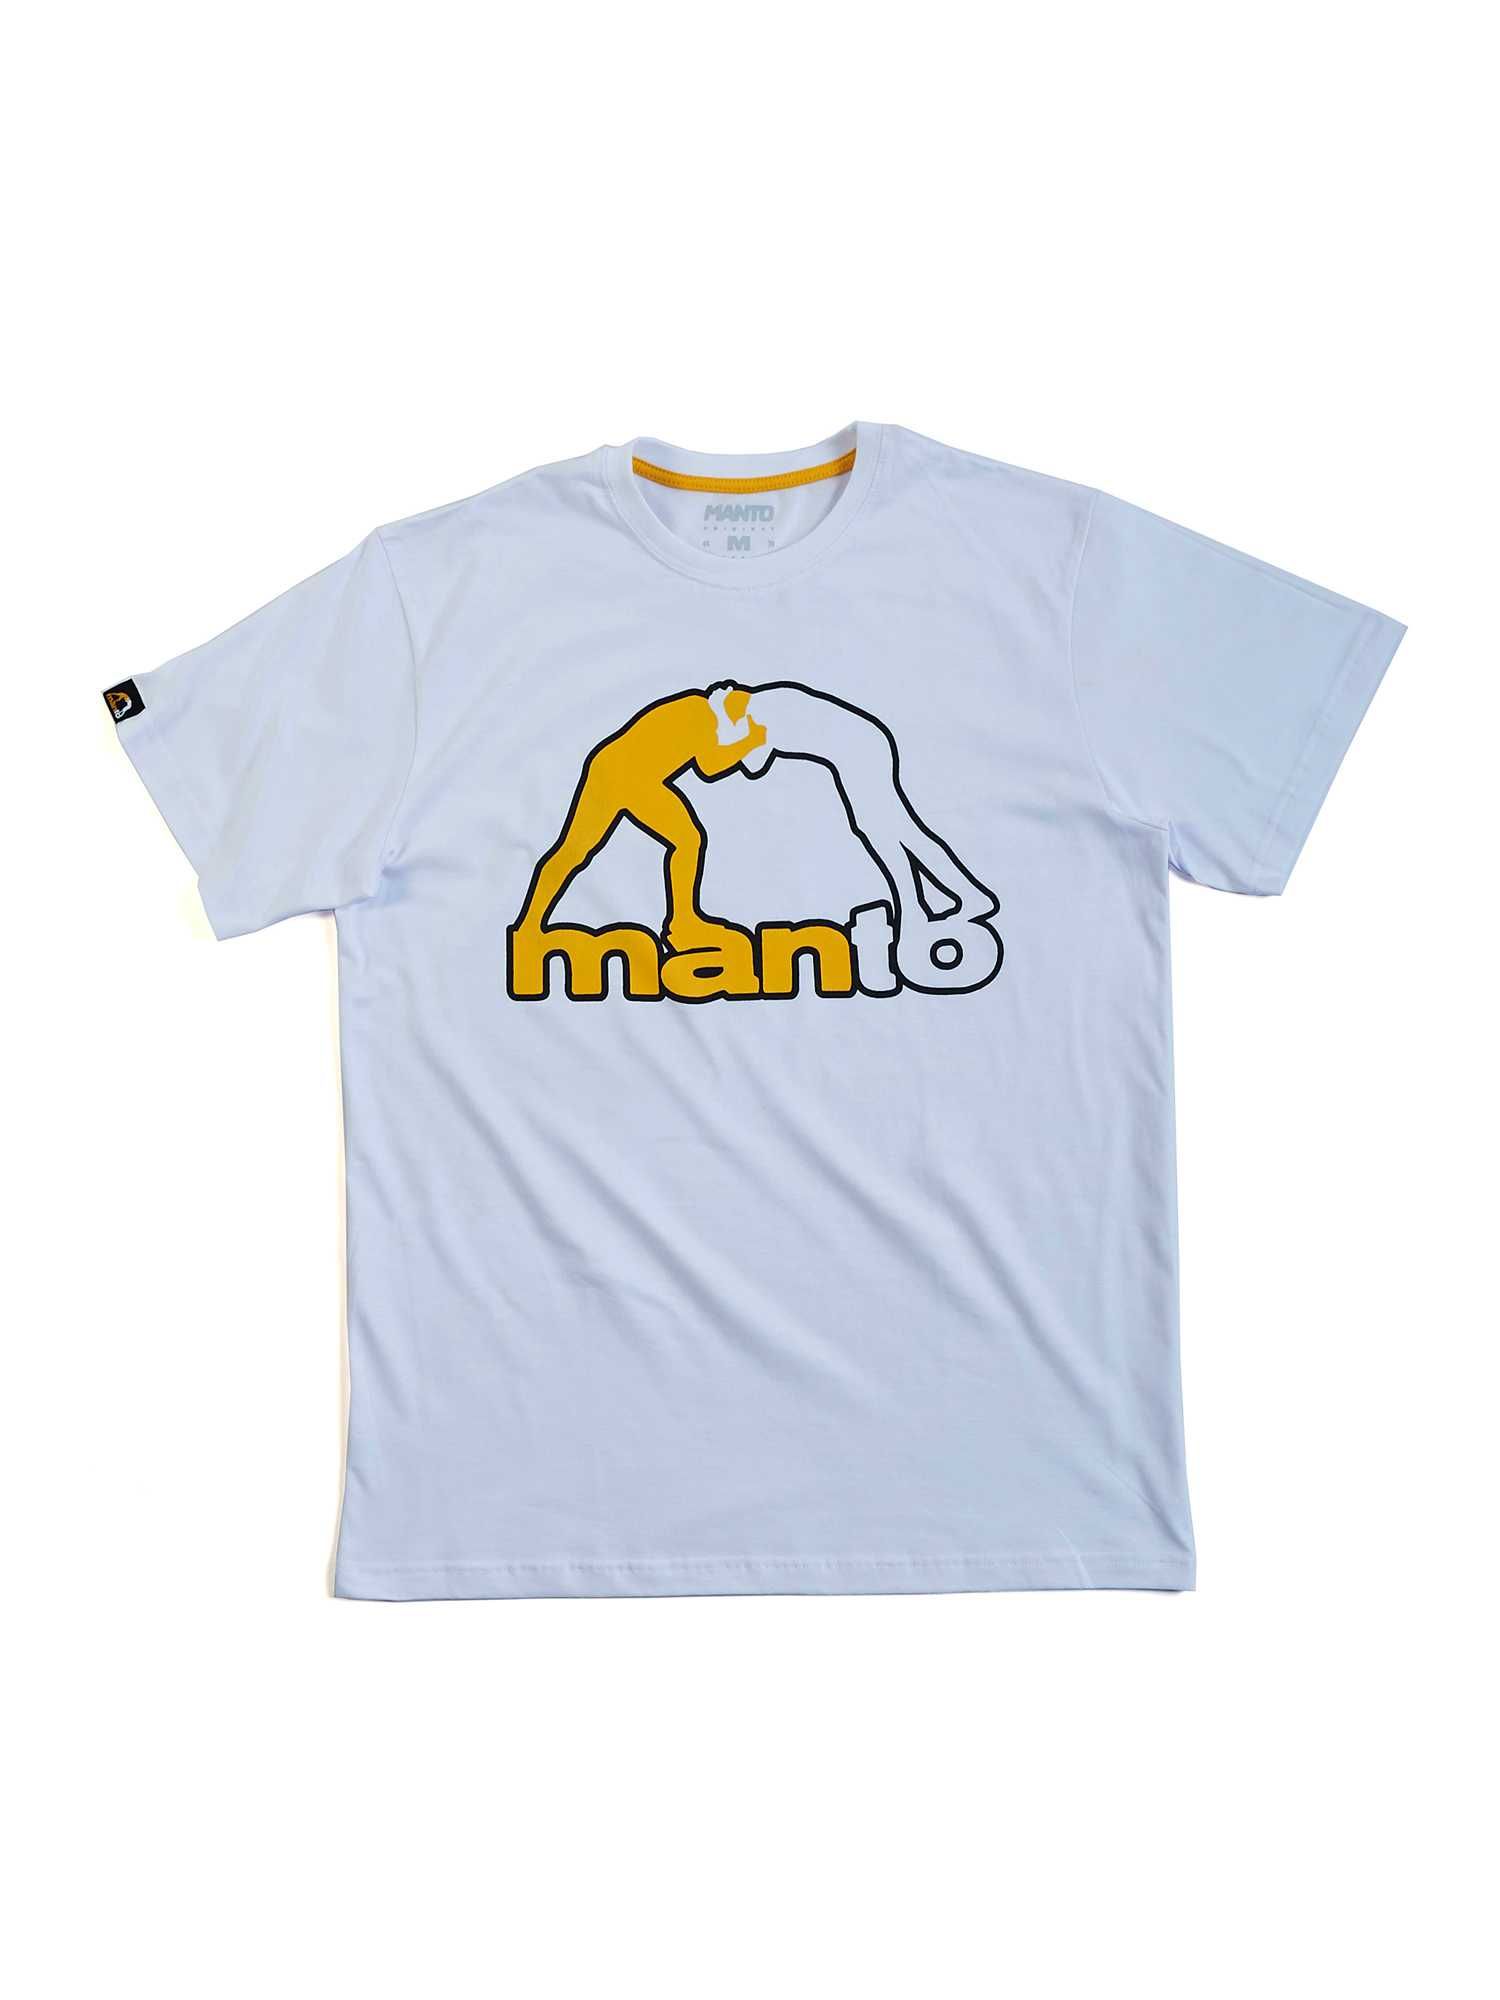 MANTO koszulka sportowa t-shirt CLASSIC biała